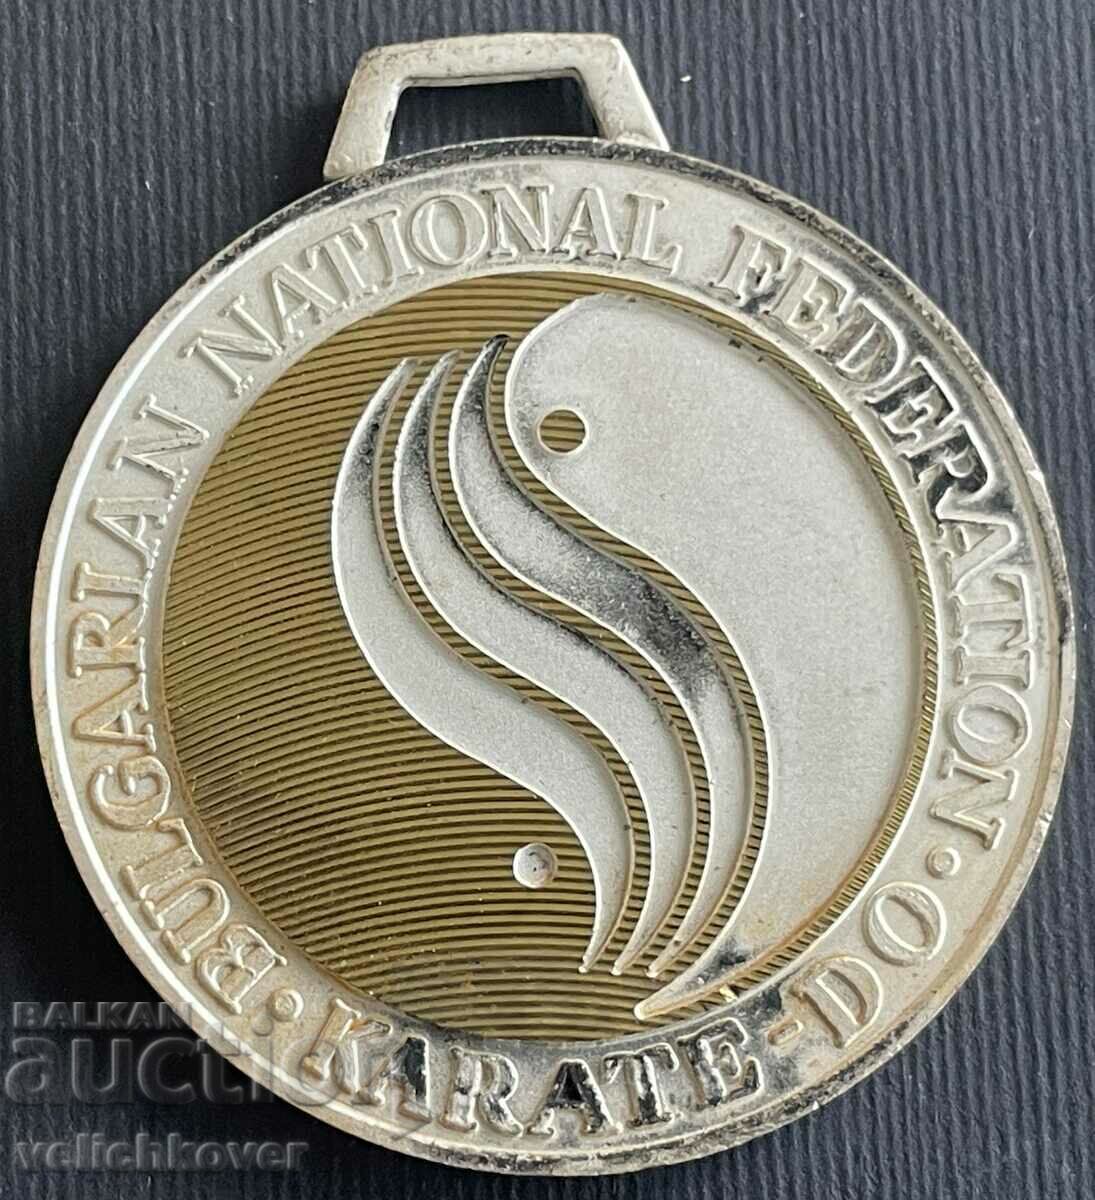 34396 Βουλγαρία ασημένιο μετάλλιο Βουλγαρική Ομοσπονδία Καράτε 97